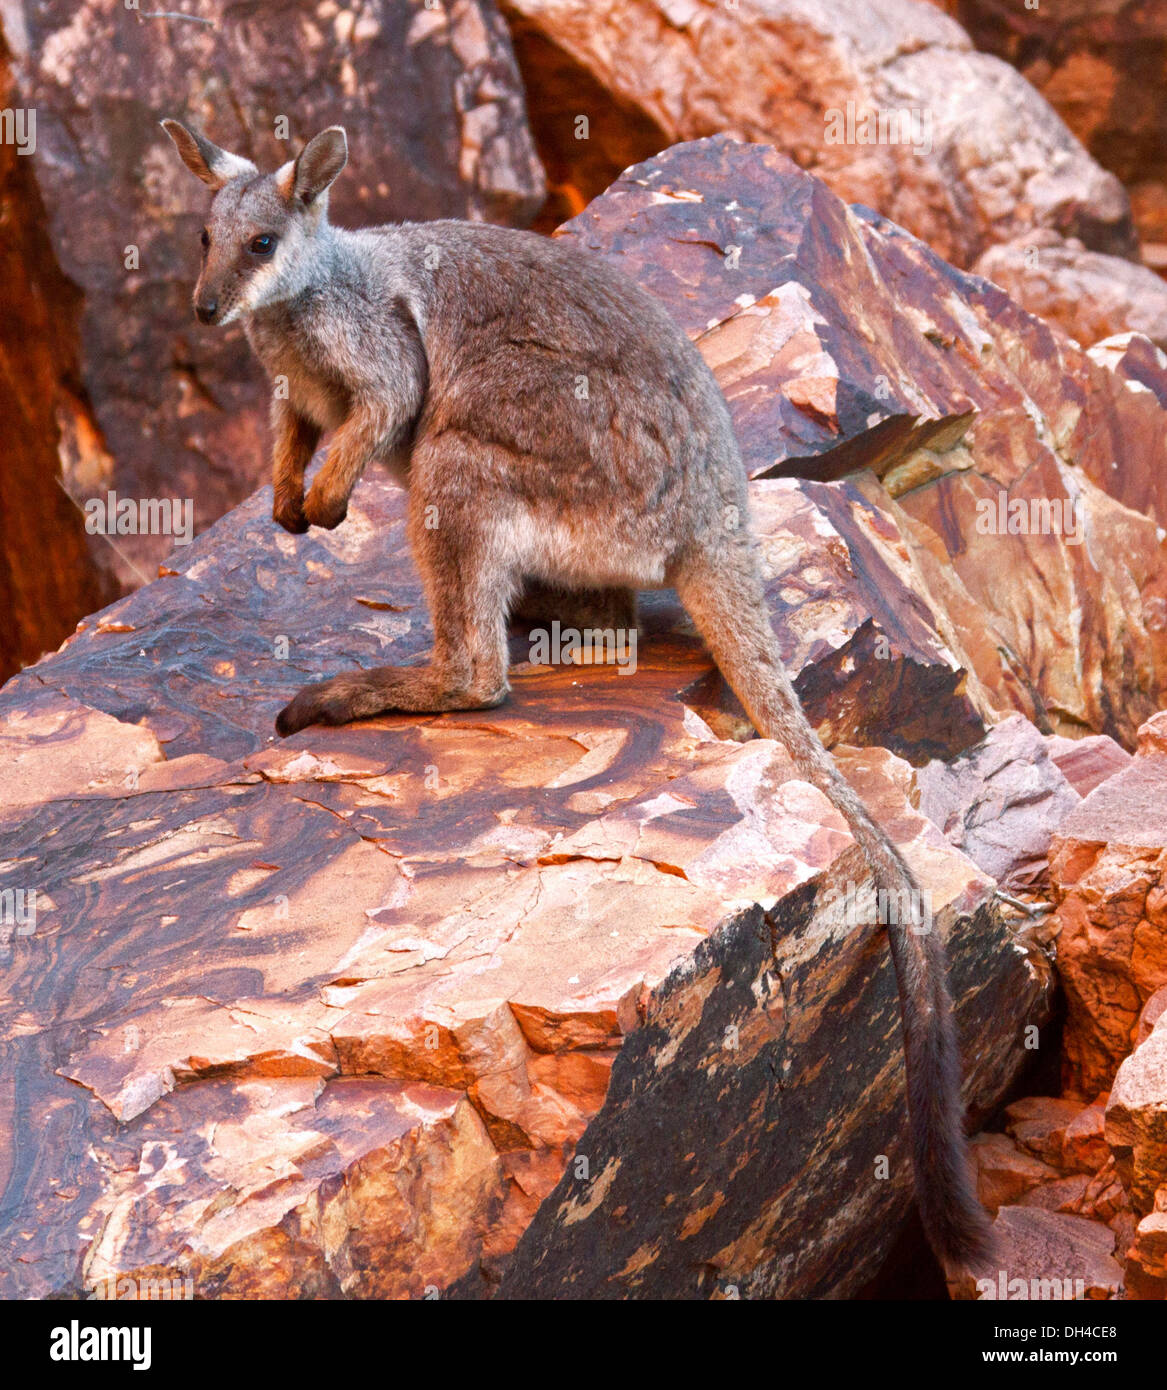 Rare black-footed rock wallaby Petrogale lateralis sur des roches à l'état sauvage à Simpson's Gap dans West MacDonnell Ranges près d'Alice Springs NT Australie Banque D'Images